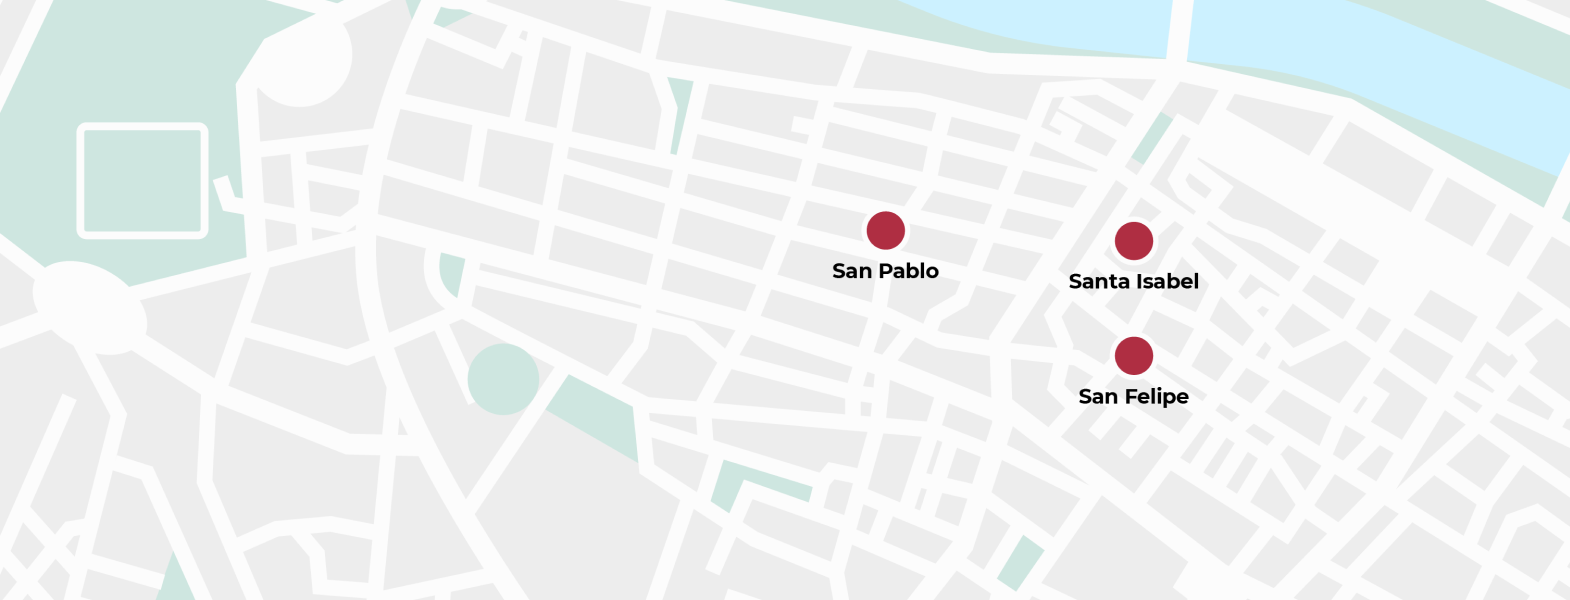 San Pablo, fachada de Santa Isabel y San Felipe